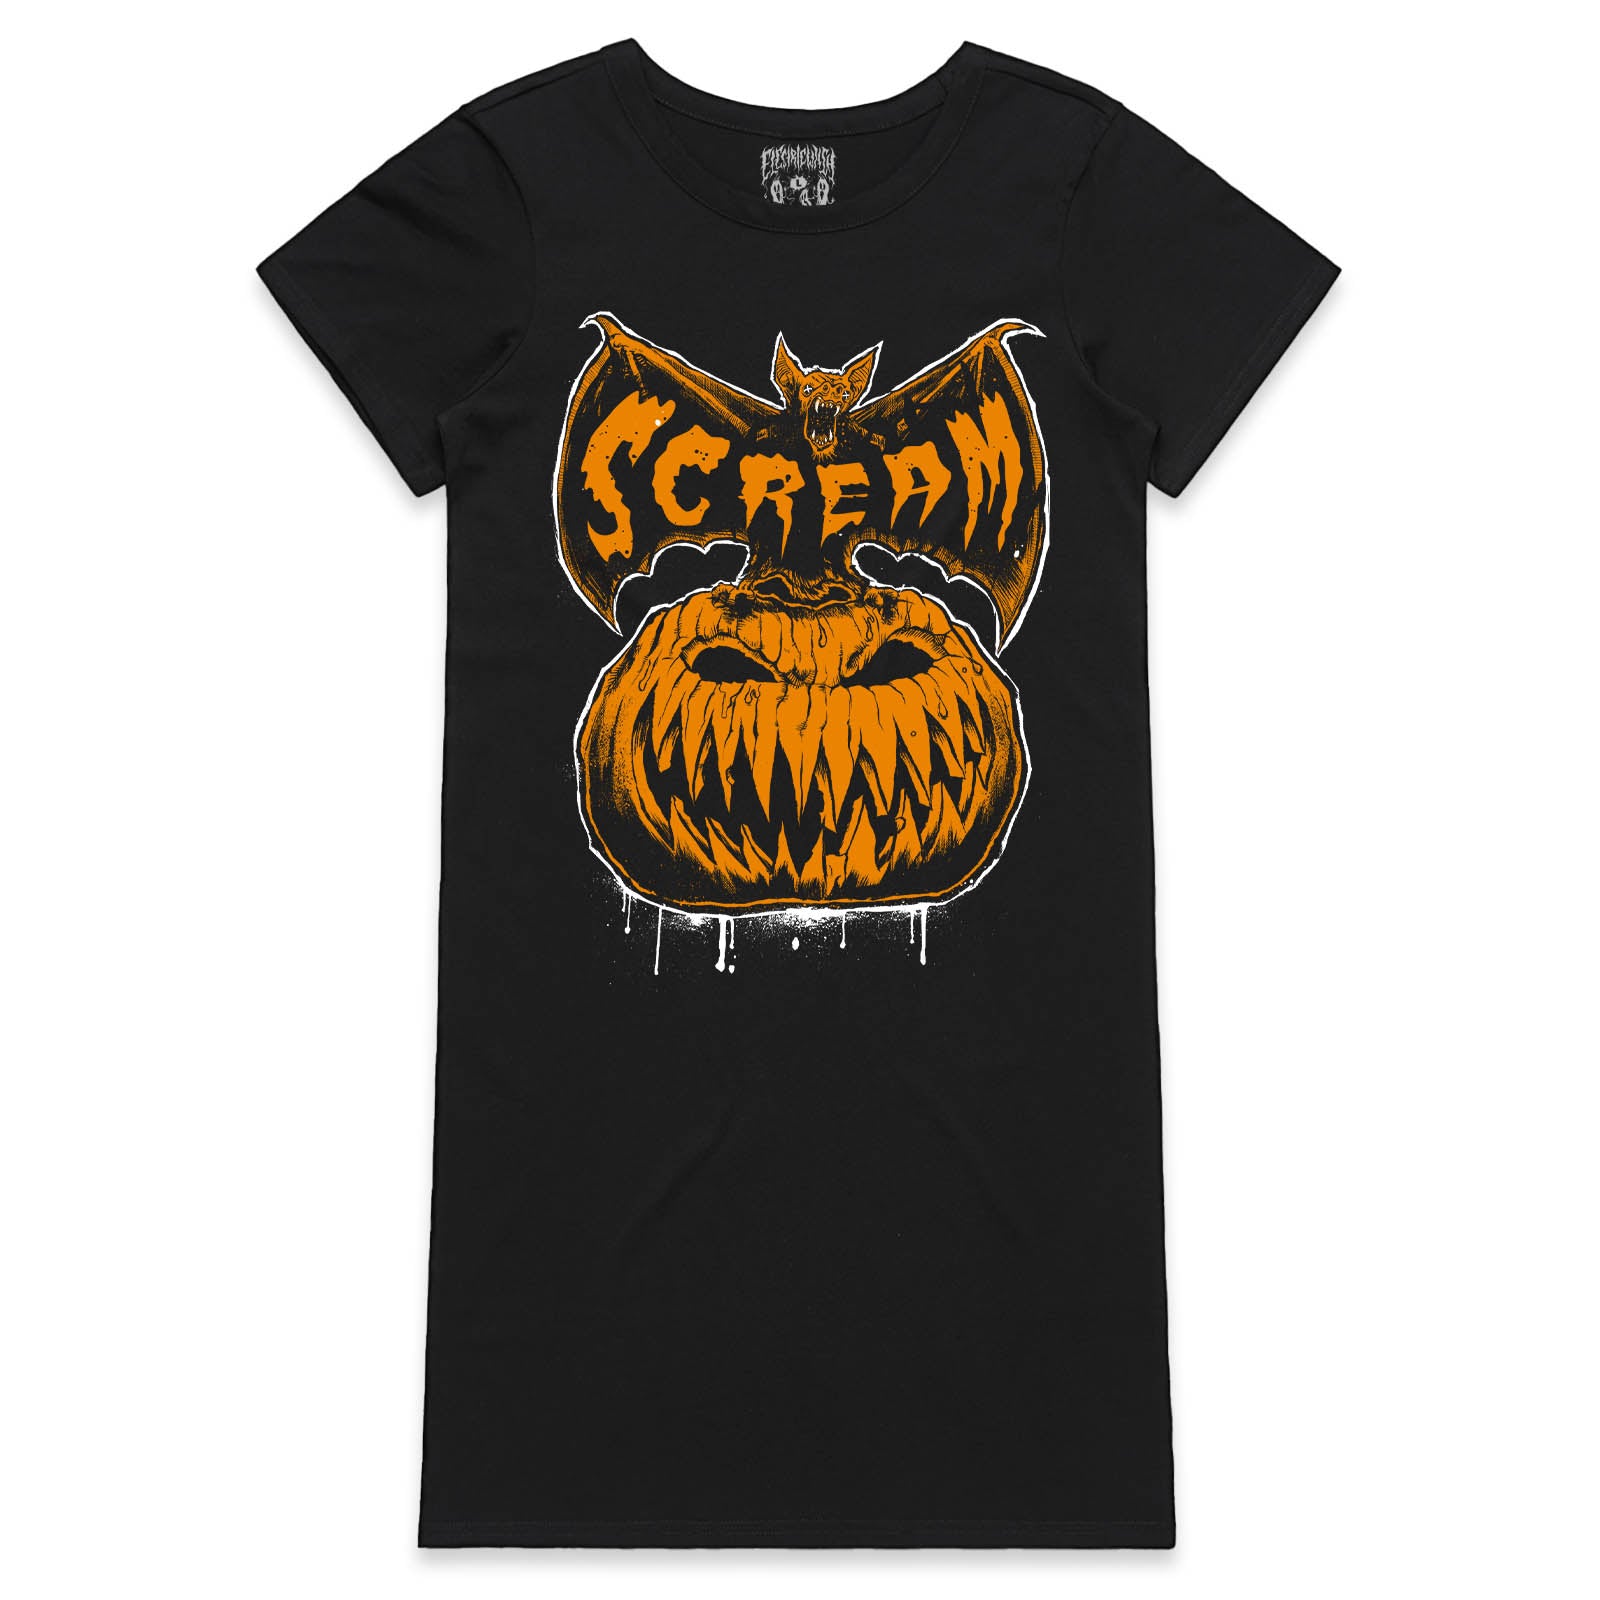 Scream T-Shirt Dress